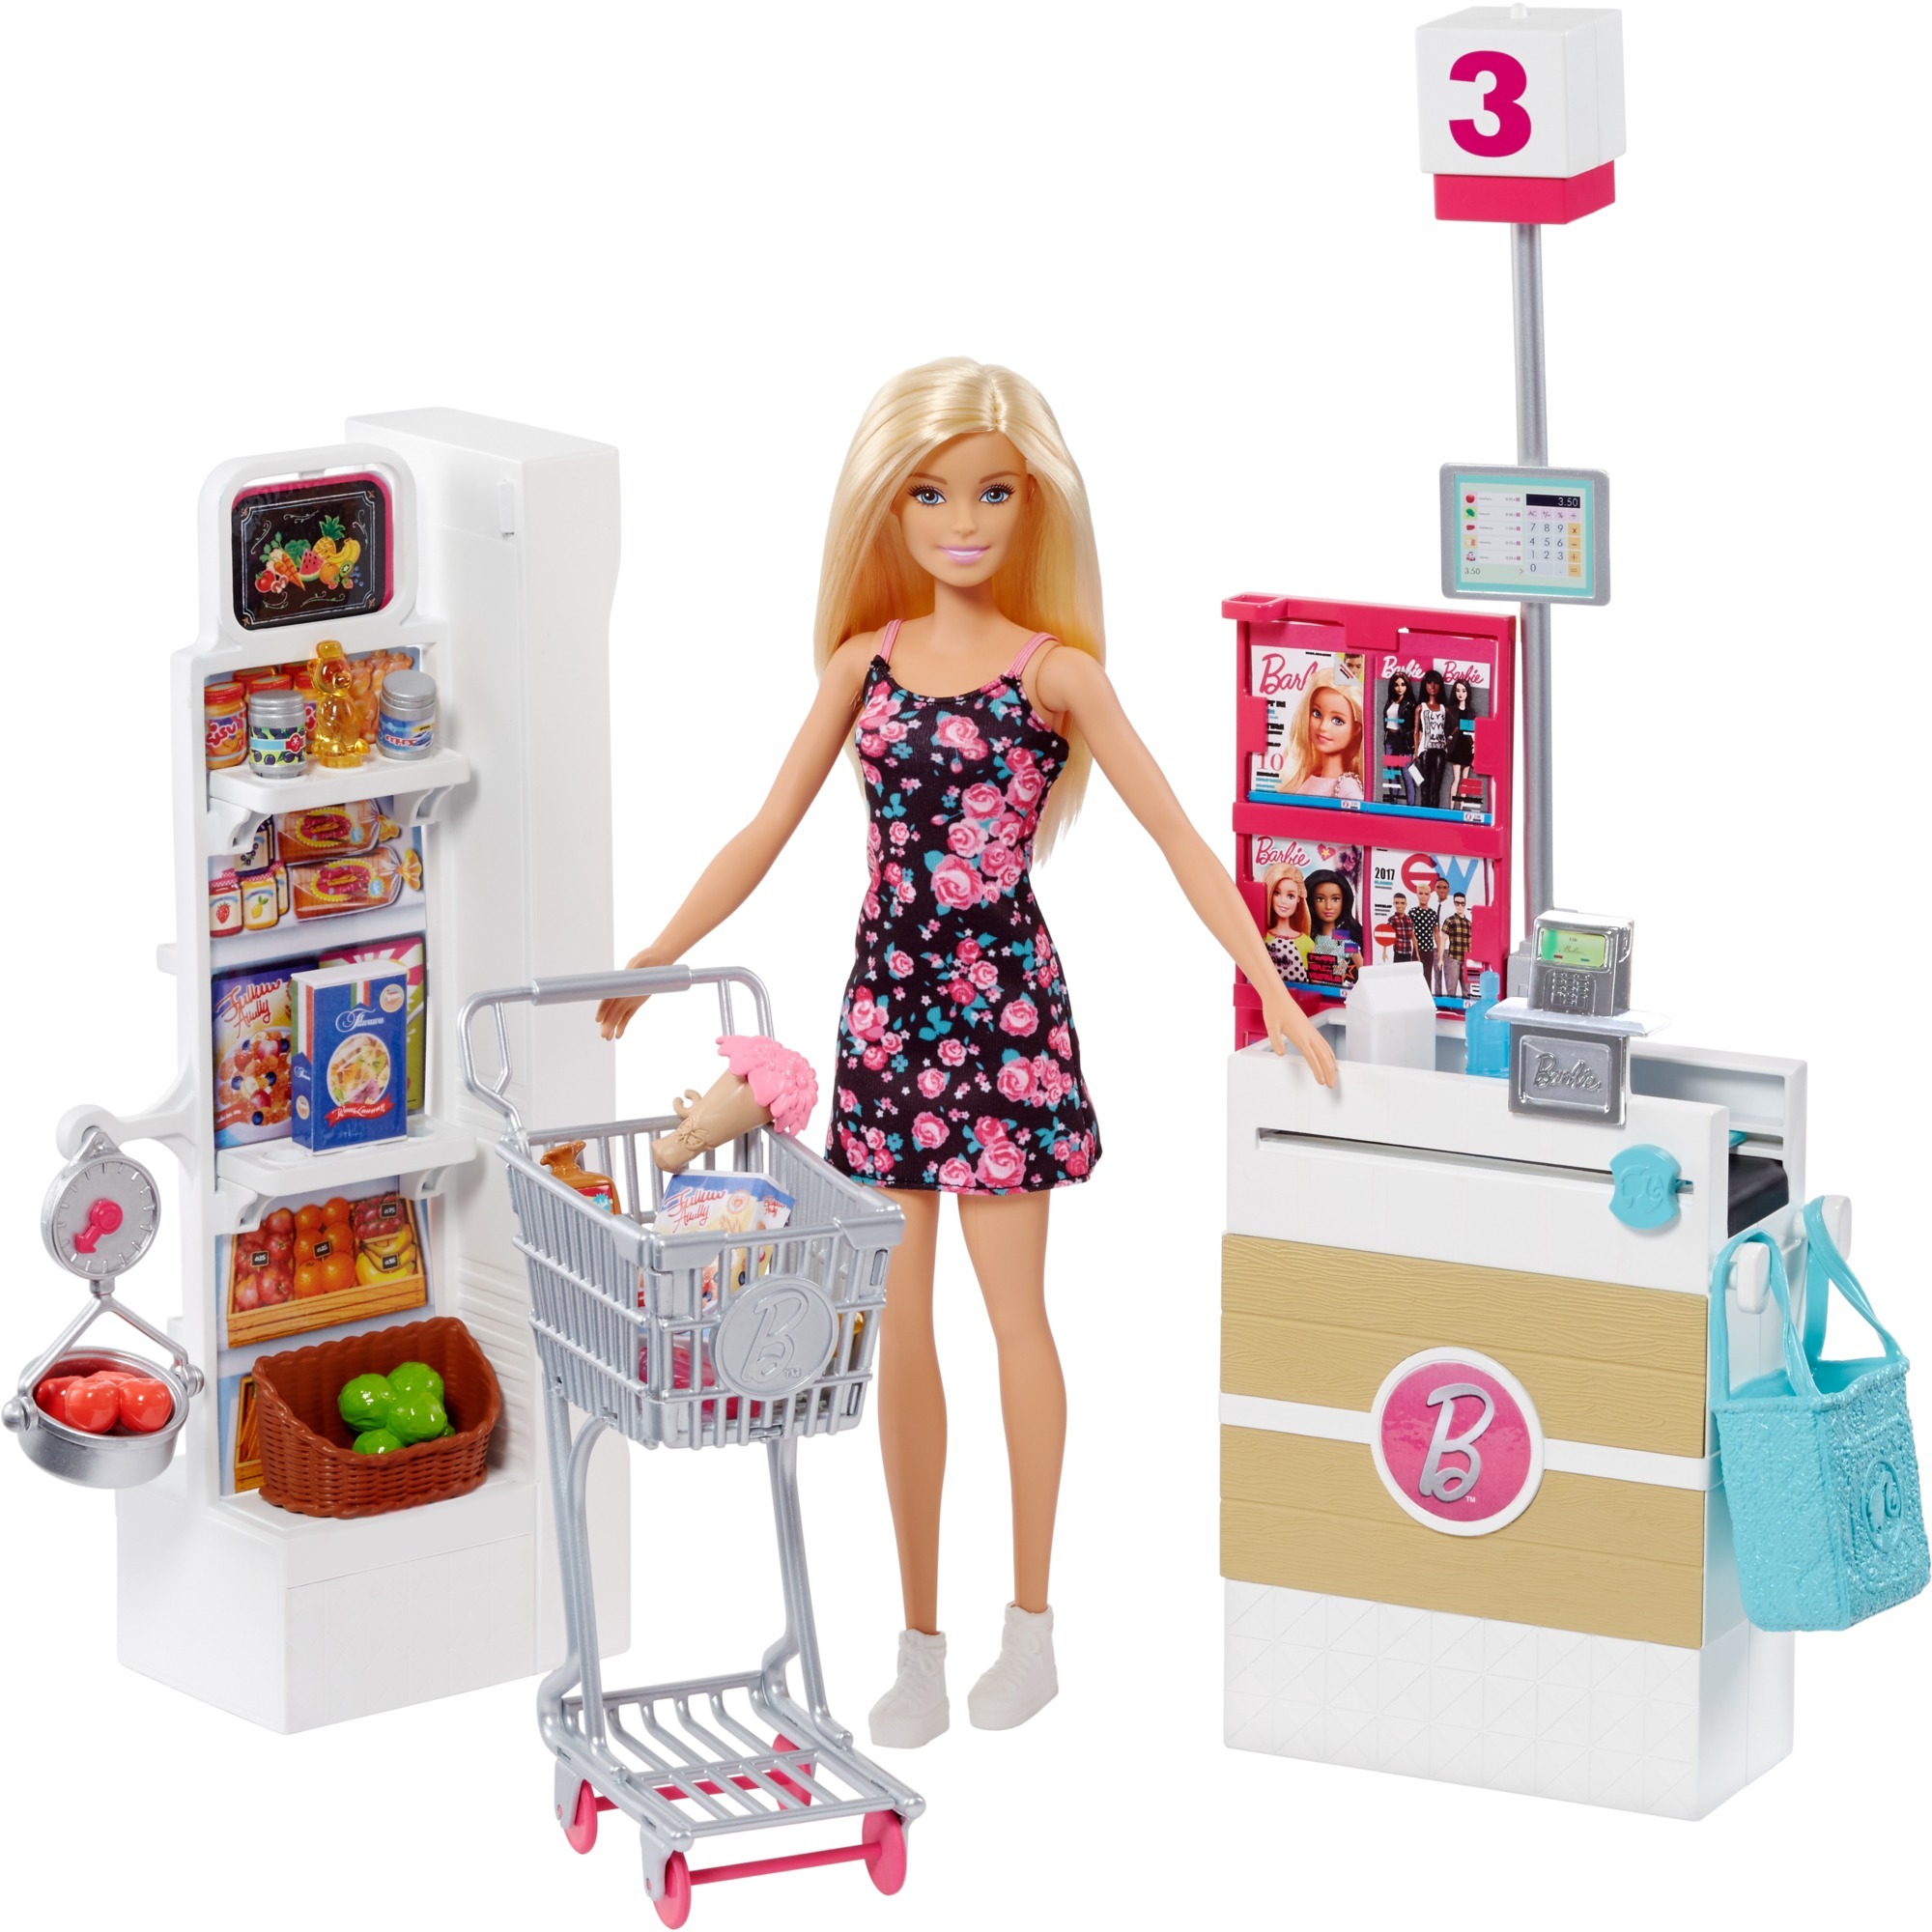 Игрушки для кукол купить. Mattel Barbie frp01 Барби супермаркет в ассортименте. Набор Barbie в супермаркете, 28 см, frp01. Игровой набор Mattel "Barbie новый дом мечты". Игровой набор Barbie frp01.